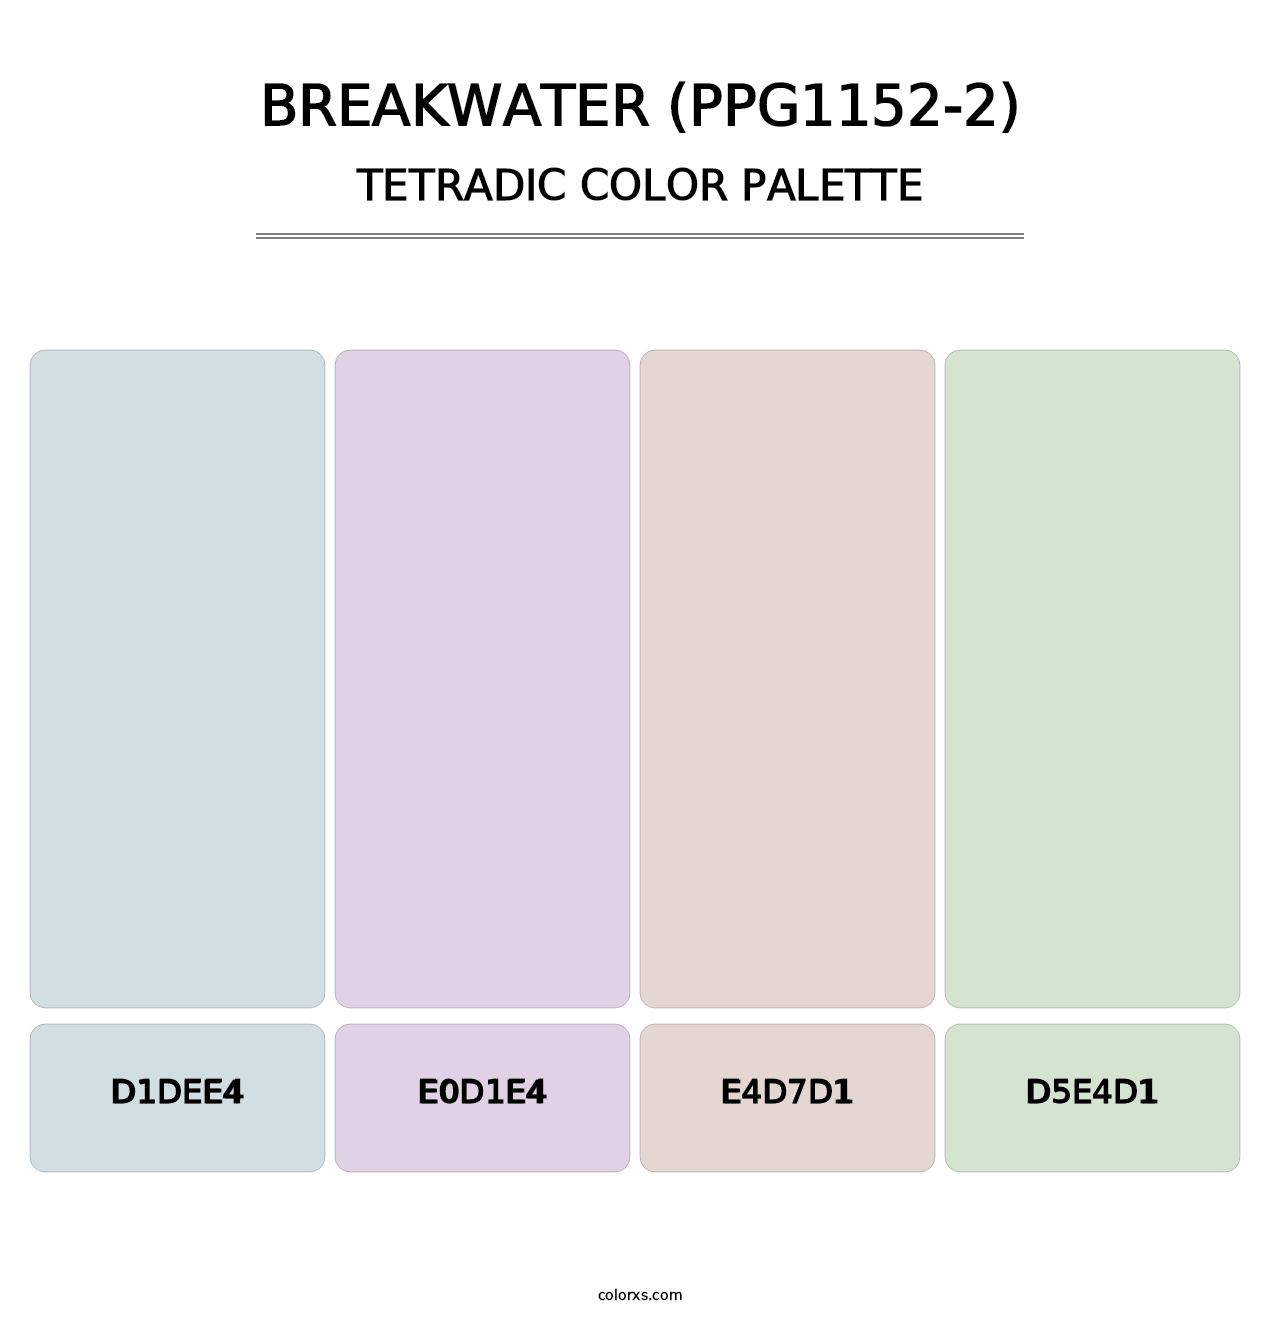 Breakwater (PPG1152-2) - Tetradic Color Palette